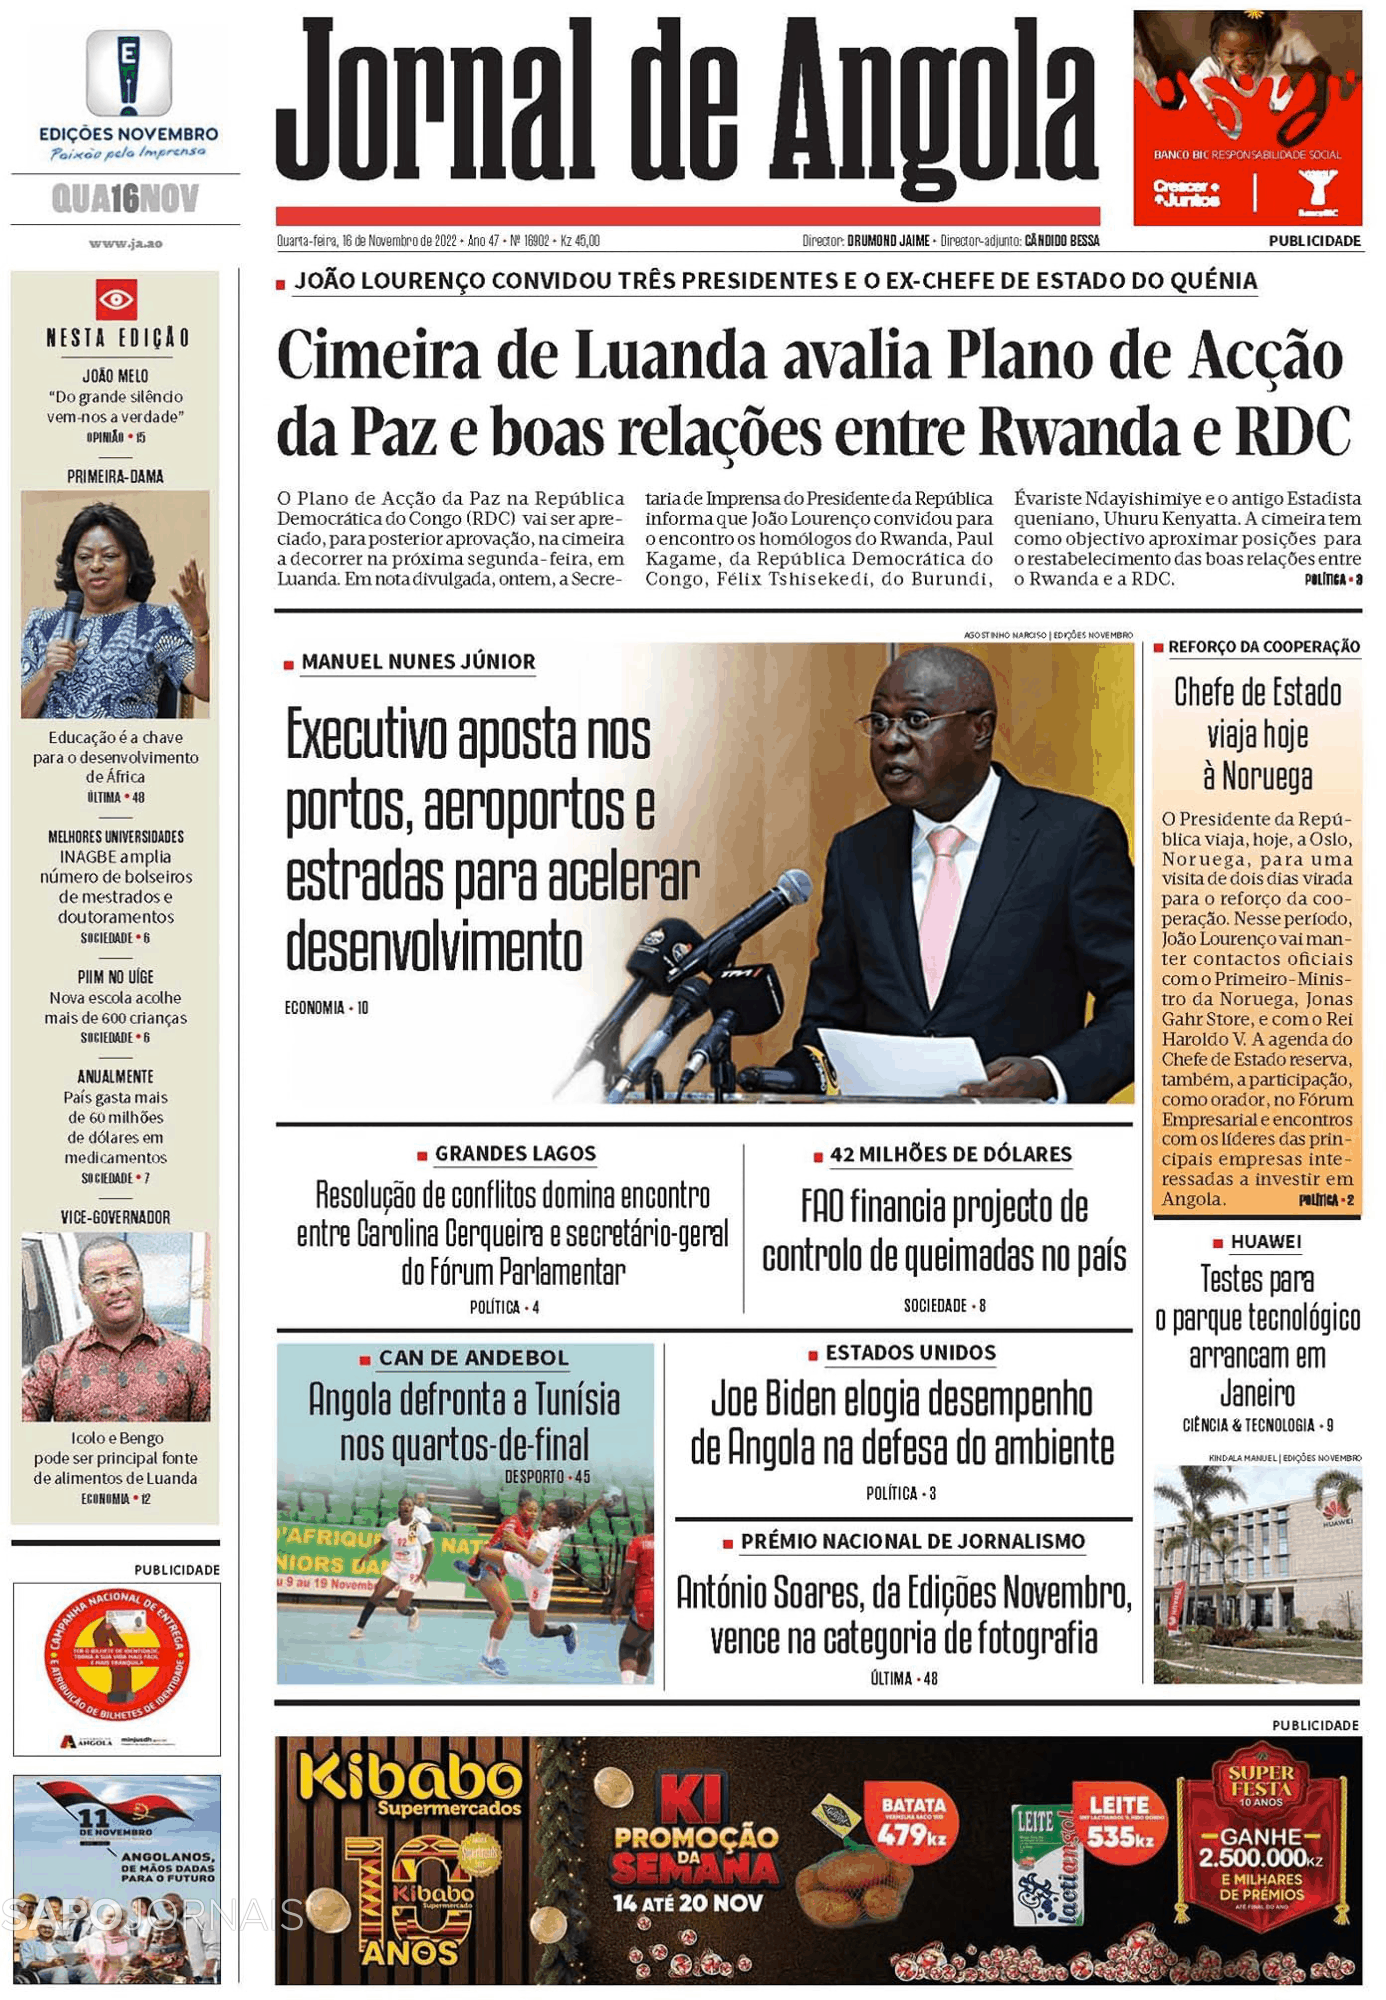 Jornal De Angola 16 Nov 2022 Jornais E Revistas Sapopt Última Hora E Notícias De Hoje 6722